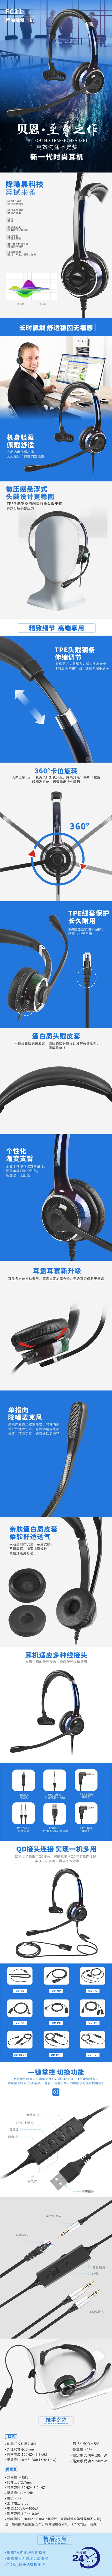 贝恩FC21-USB 话务耳机